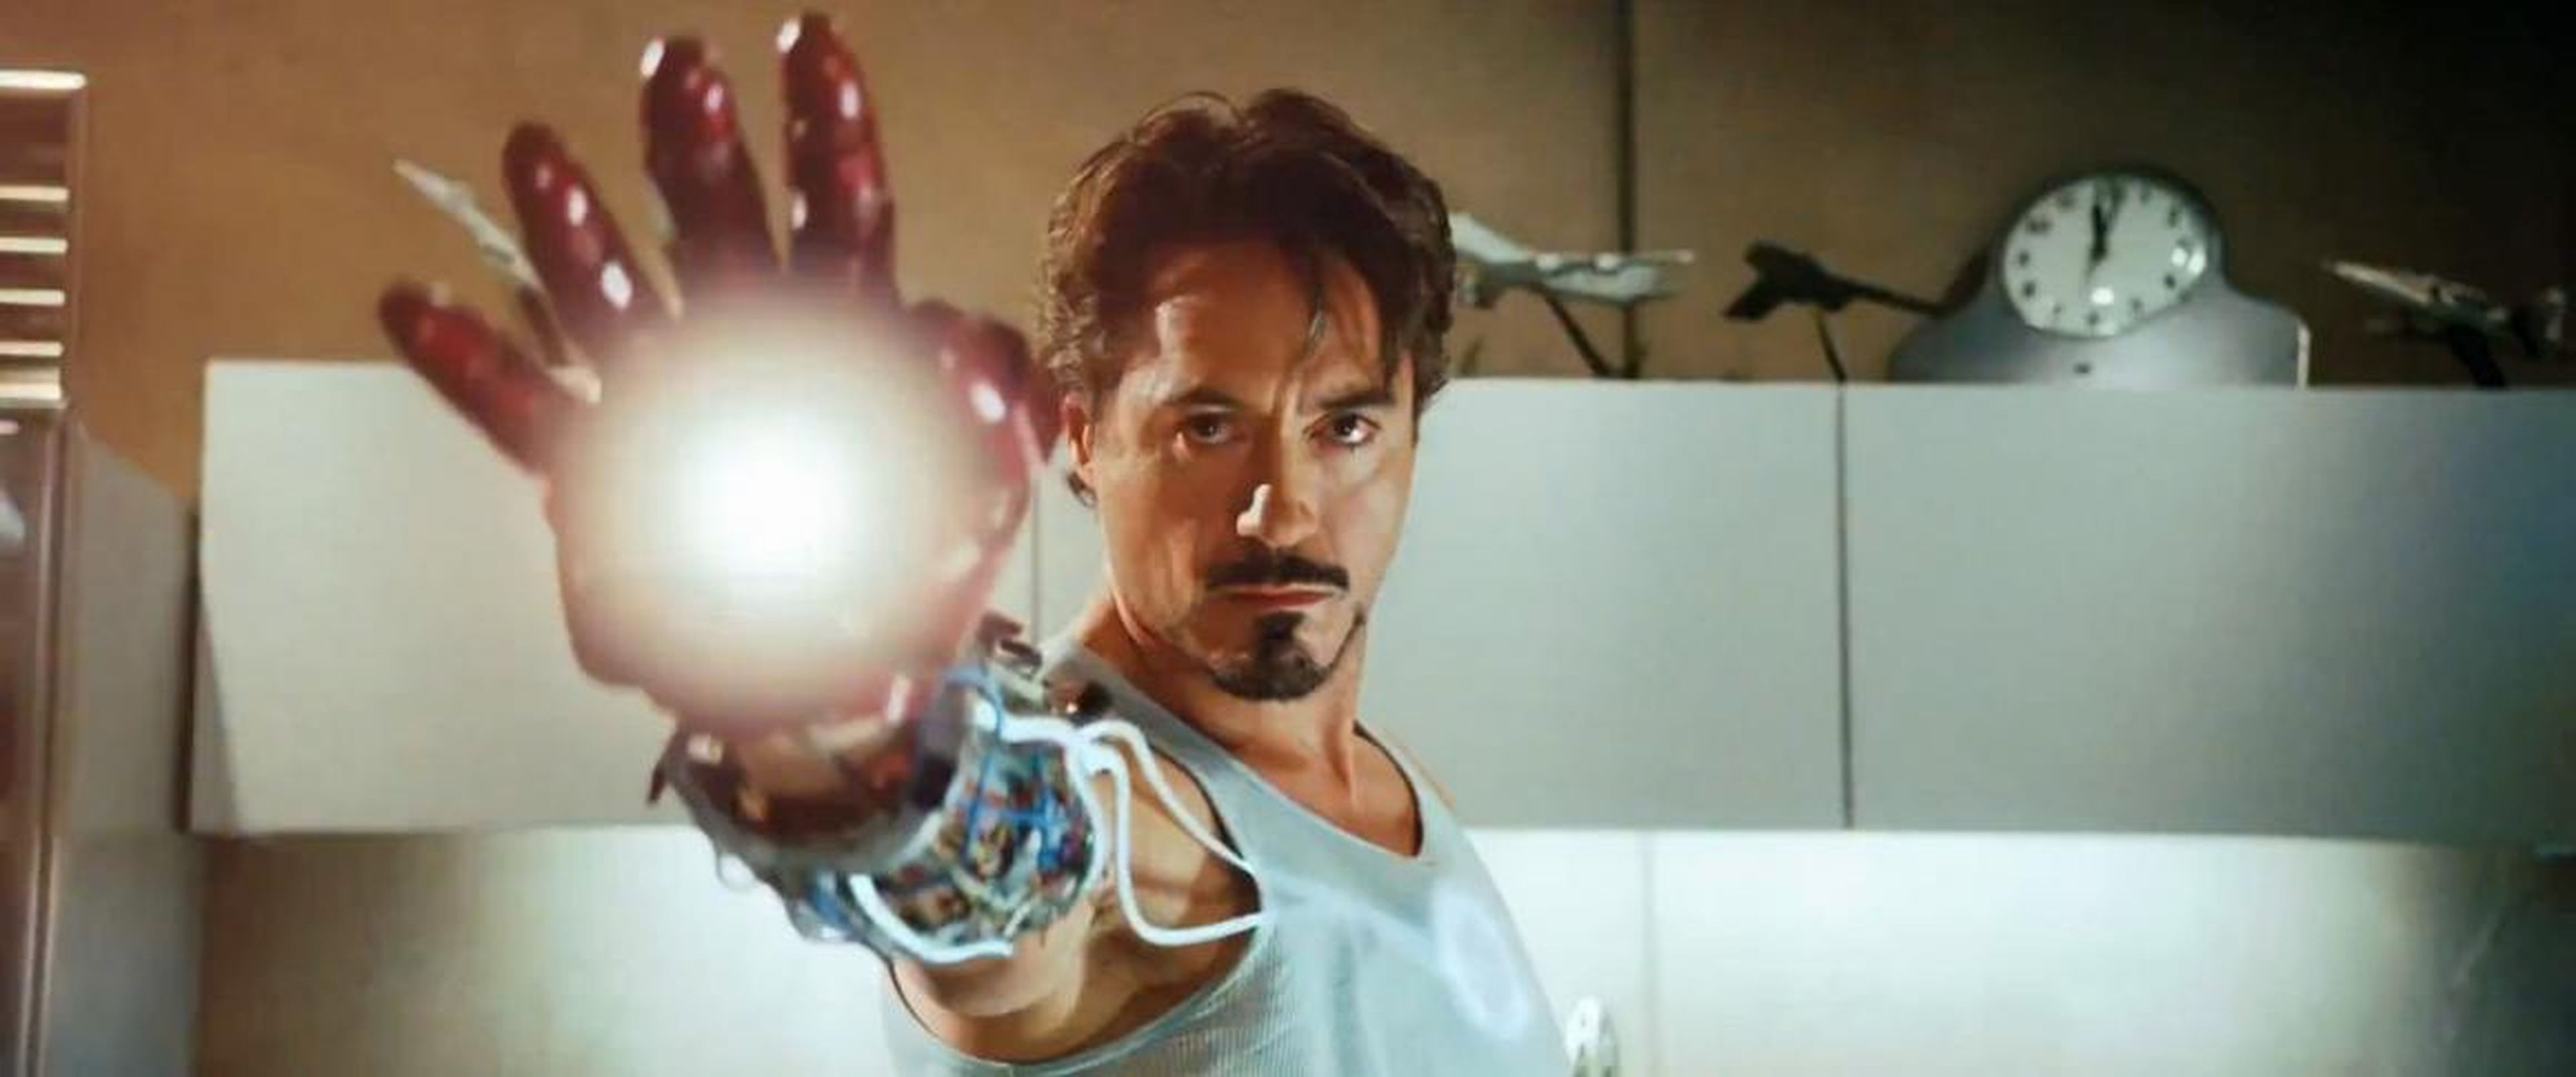 Robert Downey Jr. — 500.000 dólares por “Iron Man” (2008).